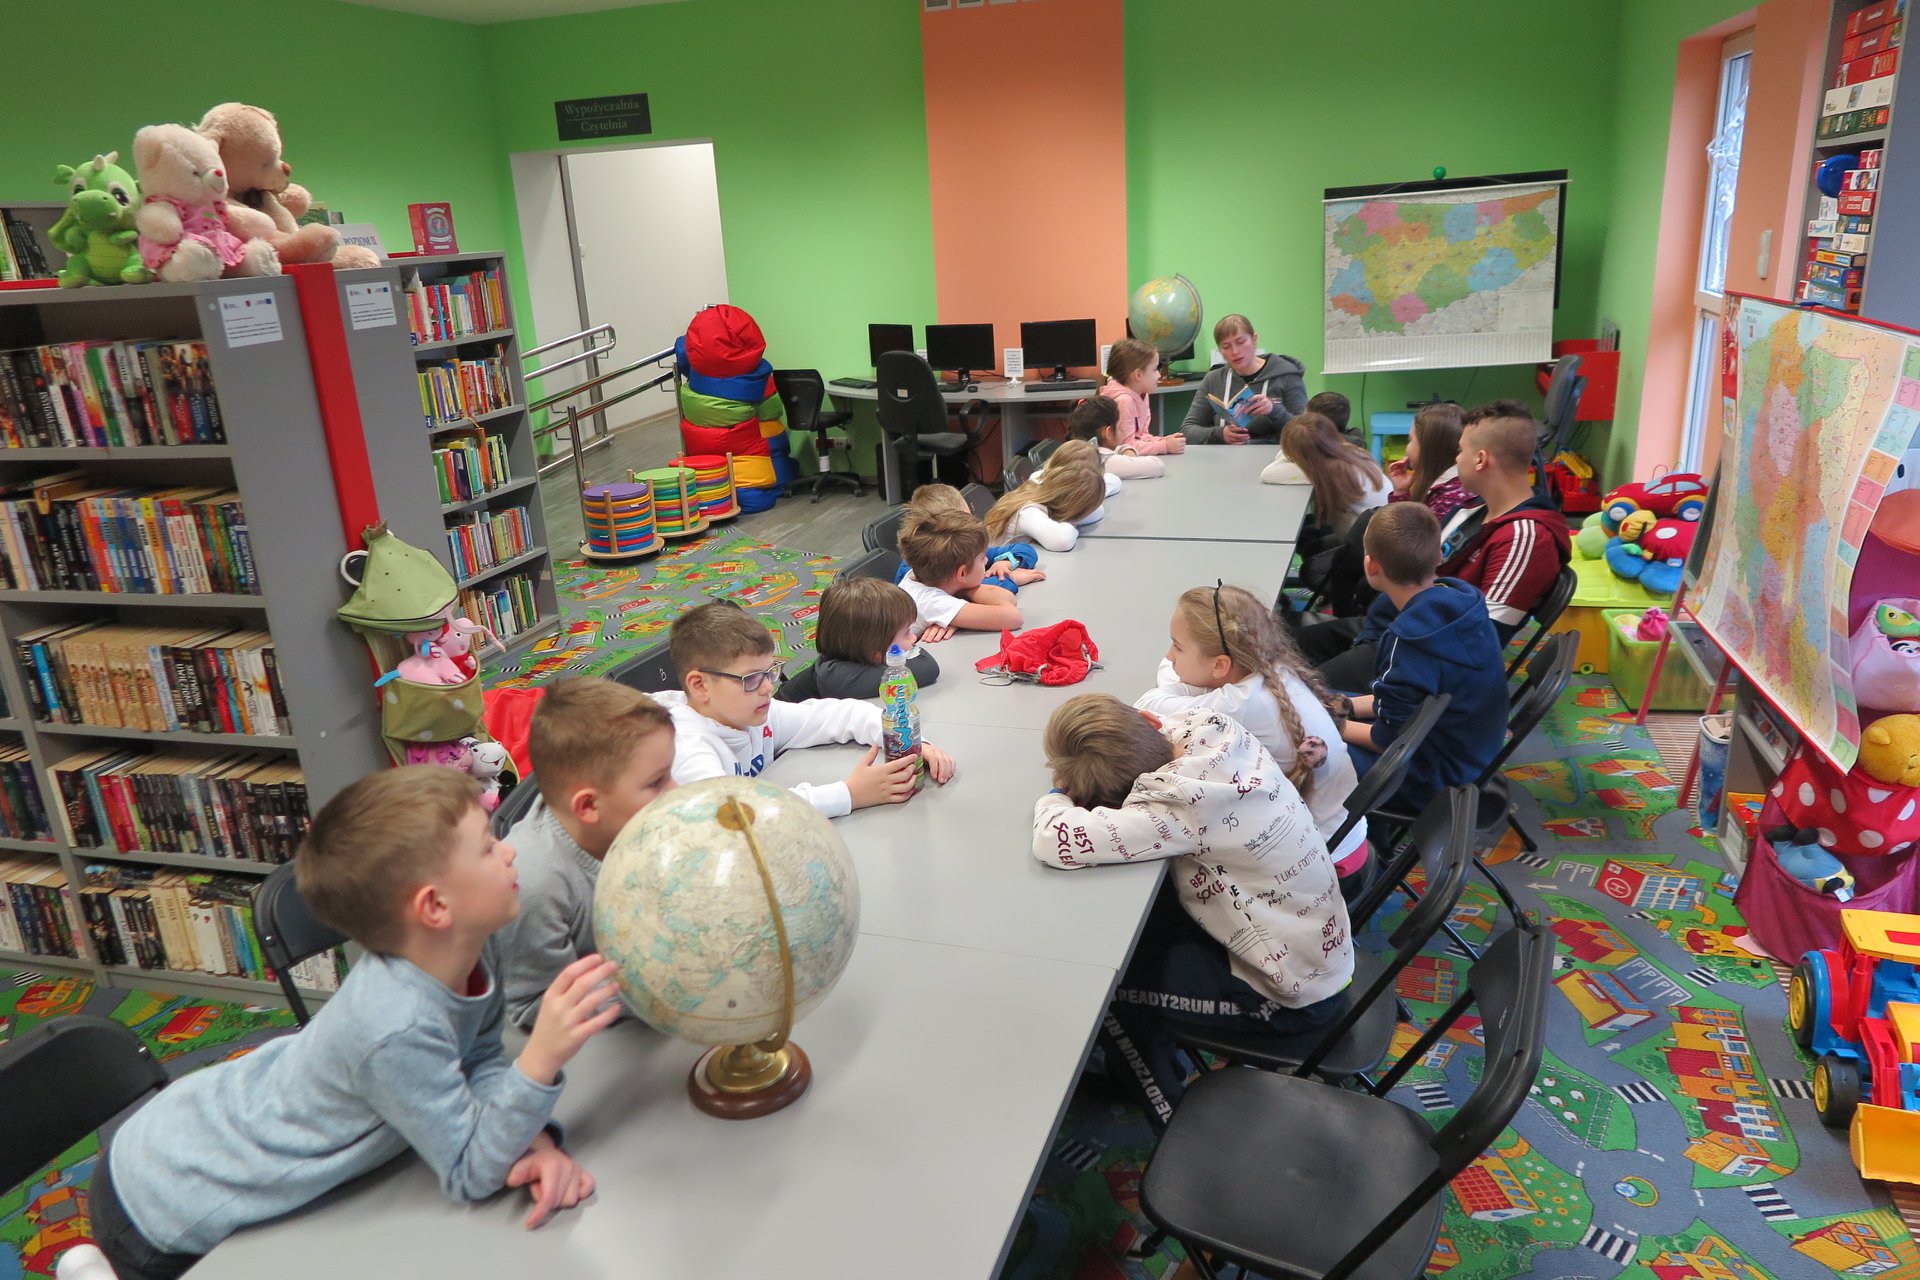 Wnętrze biblioteki (Klub Malucha) warsztaty geograficzne, bibliotekarka Małgorzata Trąmpczyńska prowadzi zajęcia. Przy stolikach siedzą dzieci. Bibliotekarka czyta książkę.